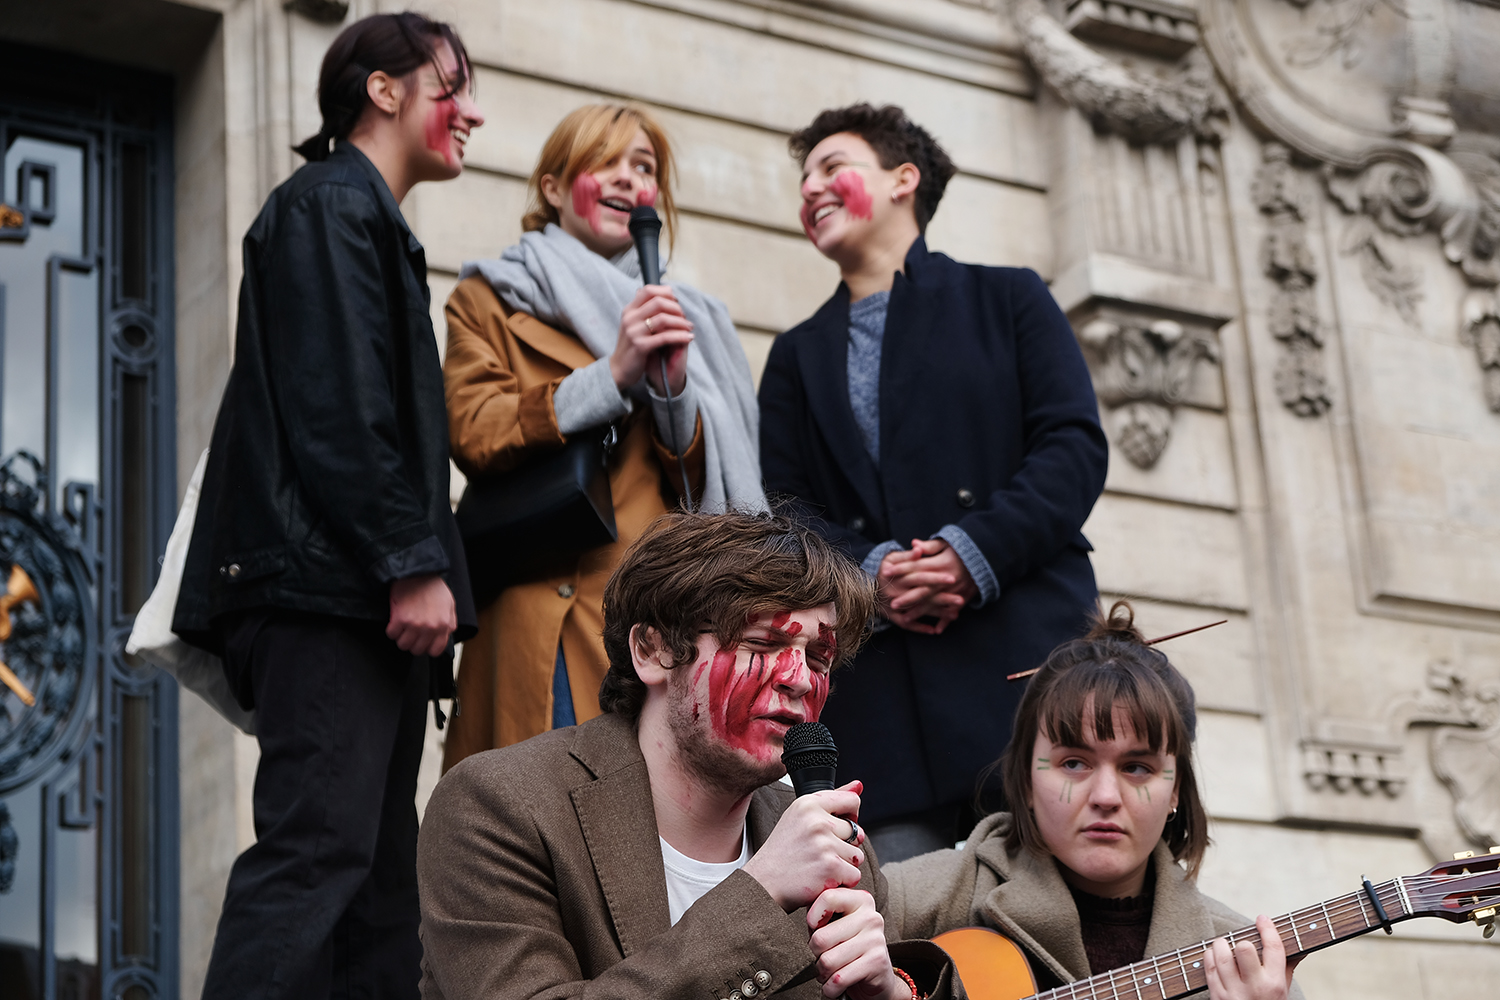 Maquillés de rouge pour symboliser la terre meurtrie, Gaultier et ses amies reprennent une chanson de la chanteuse norvégienne Aurora.